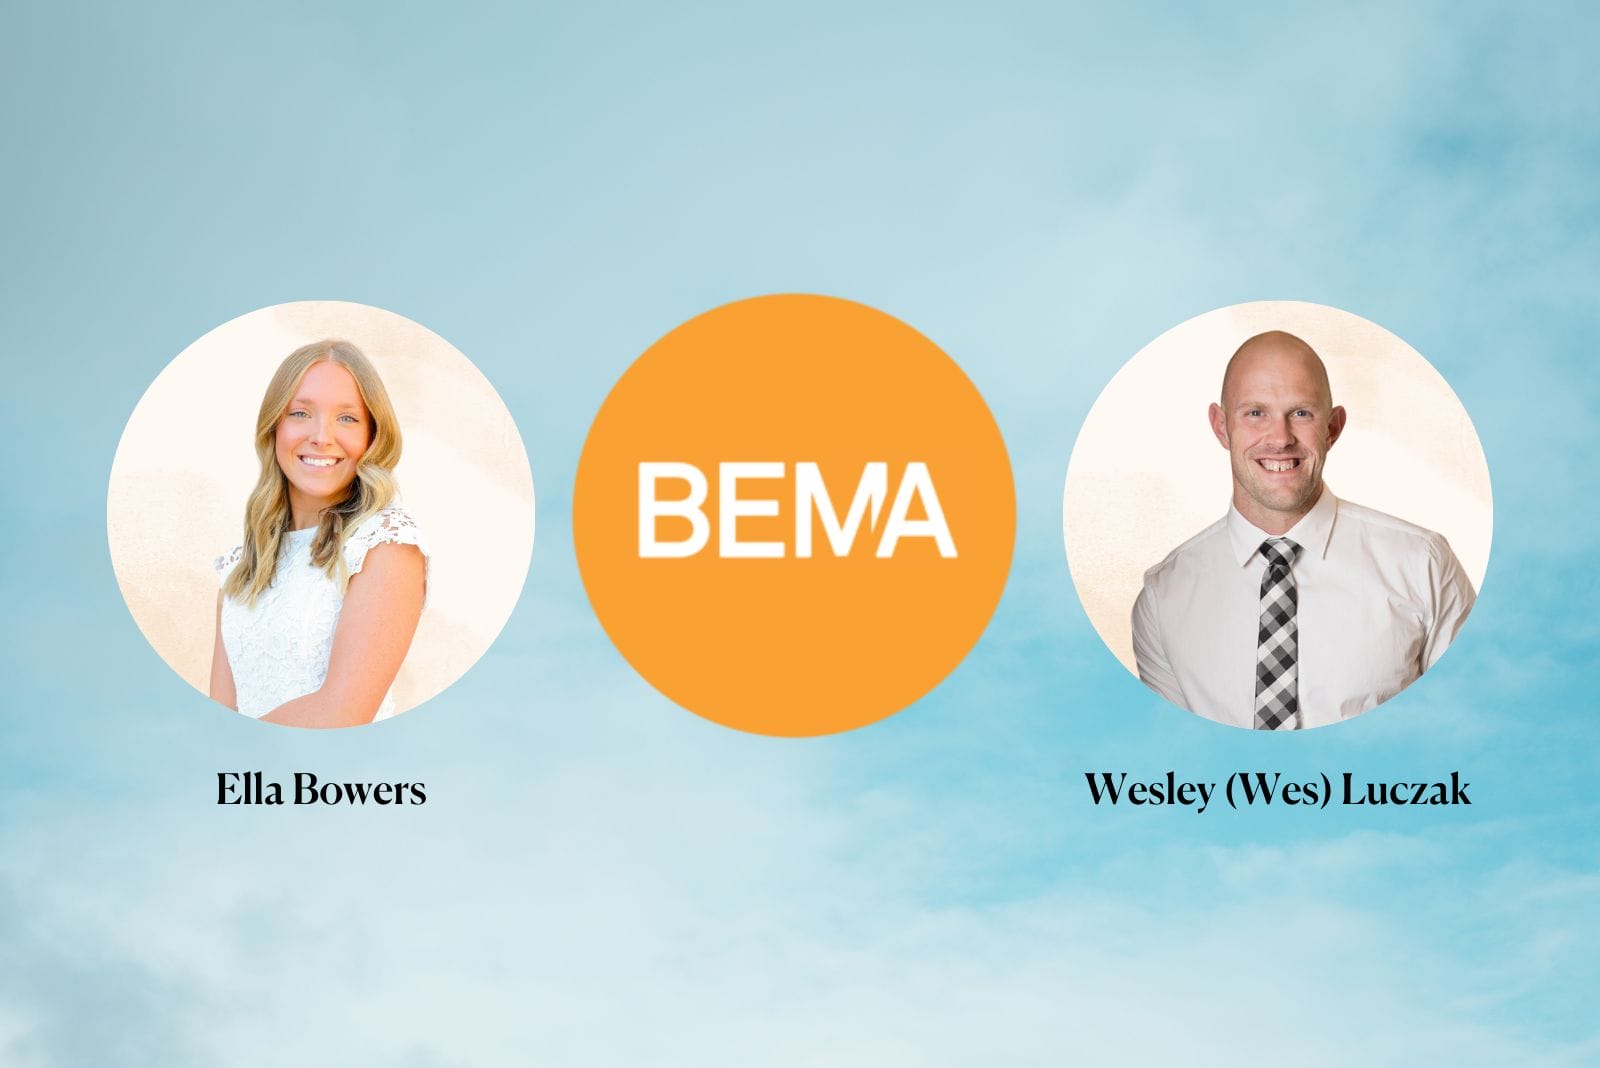 Ella Bowers and Wesley Luczak next to BEMA logo